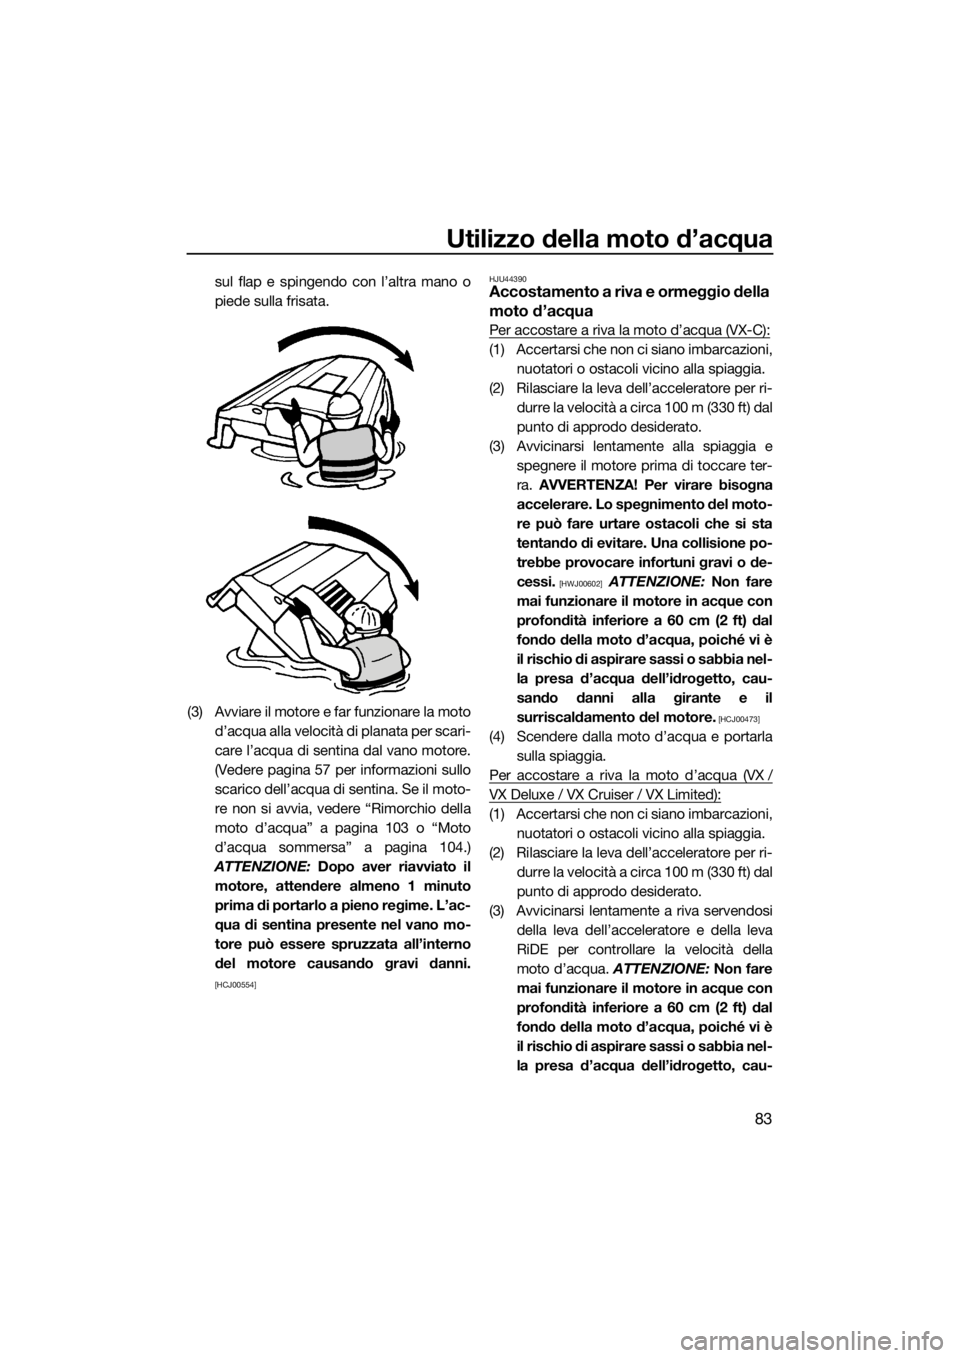 YAMAHA VX 2019  Manuale duso (in Italian) Utilizzo della moto d’acqua
83
sul flap e spingendo con l’altra mano o
piede sulla frisata.
(3) Avviare il motore e far funzionare la moto
d’acqua alla velocità di planata per scari-
care l’a